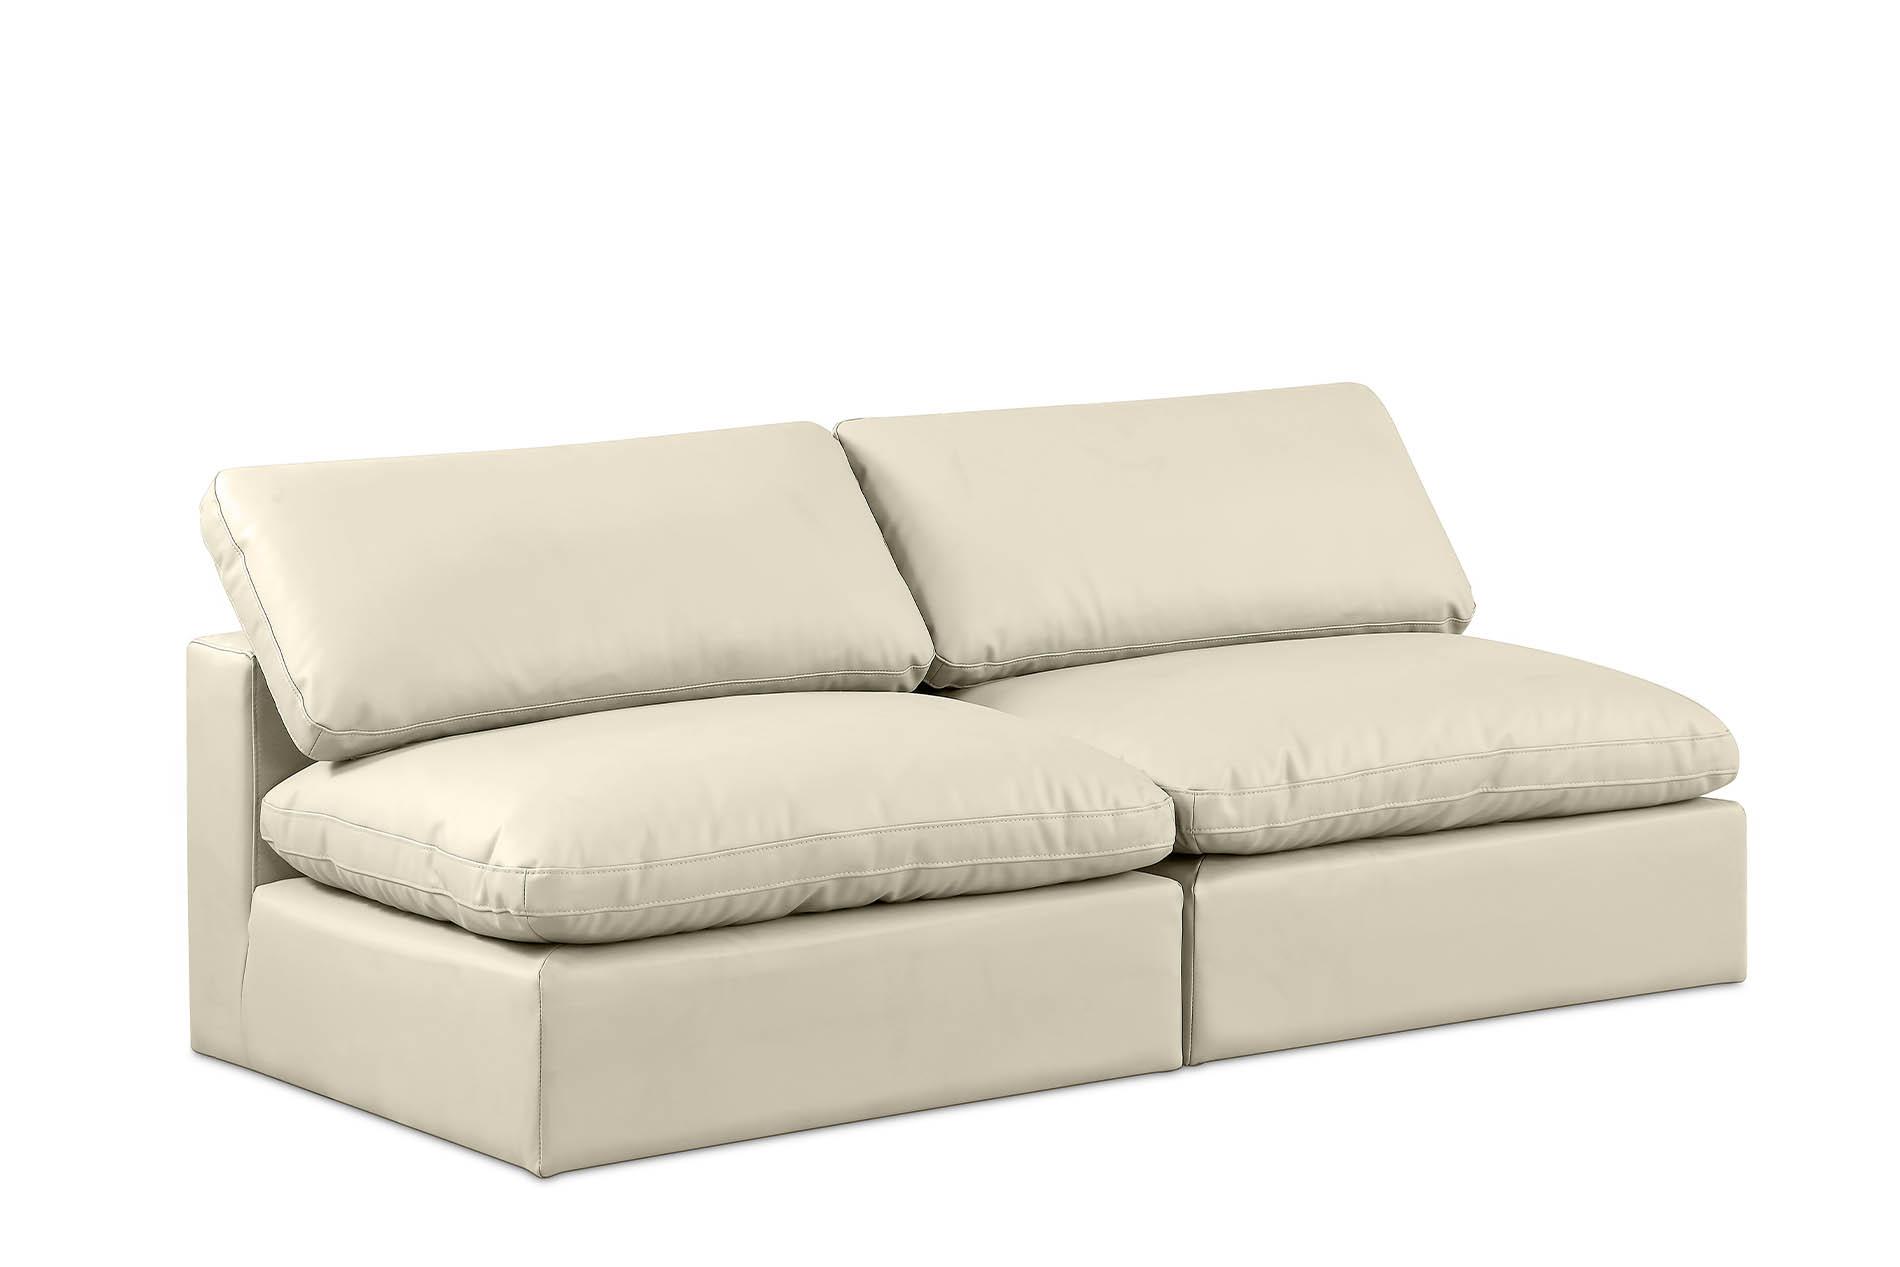 Contemporary, Modern Modular Sofa 188Cream-S78 188Cream-S78 in Cream Faux Leather